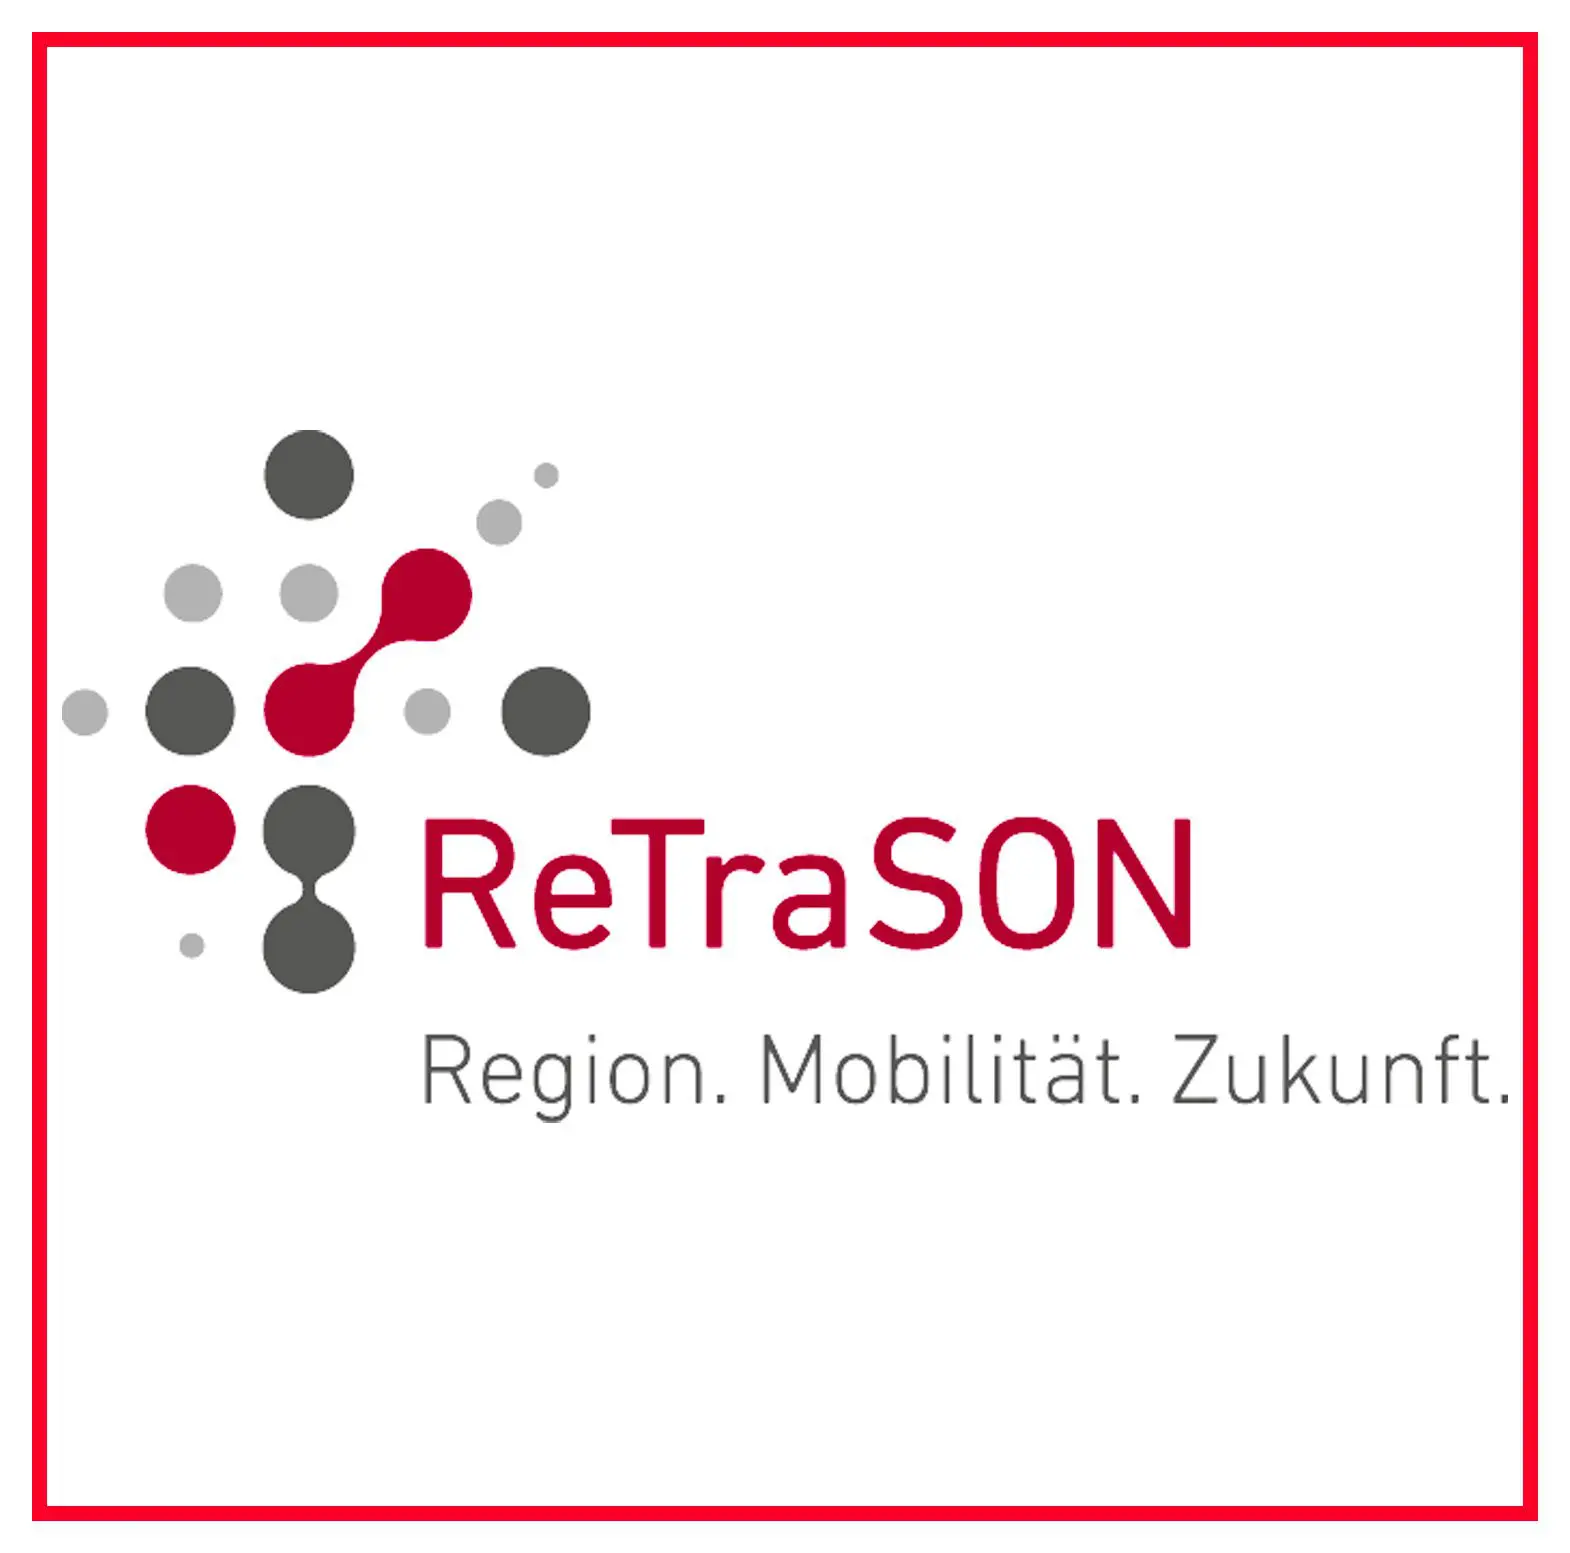 Logo ReTraSON